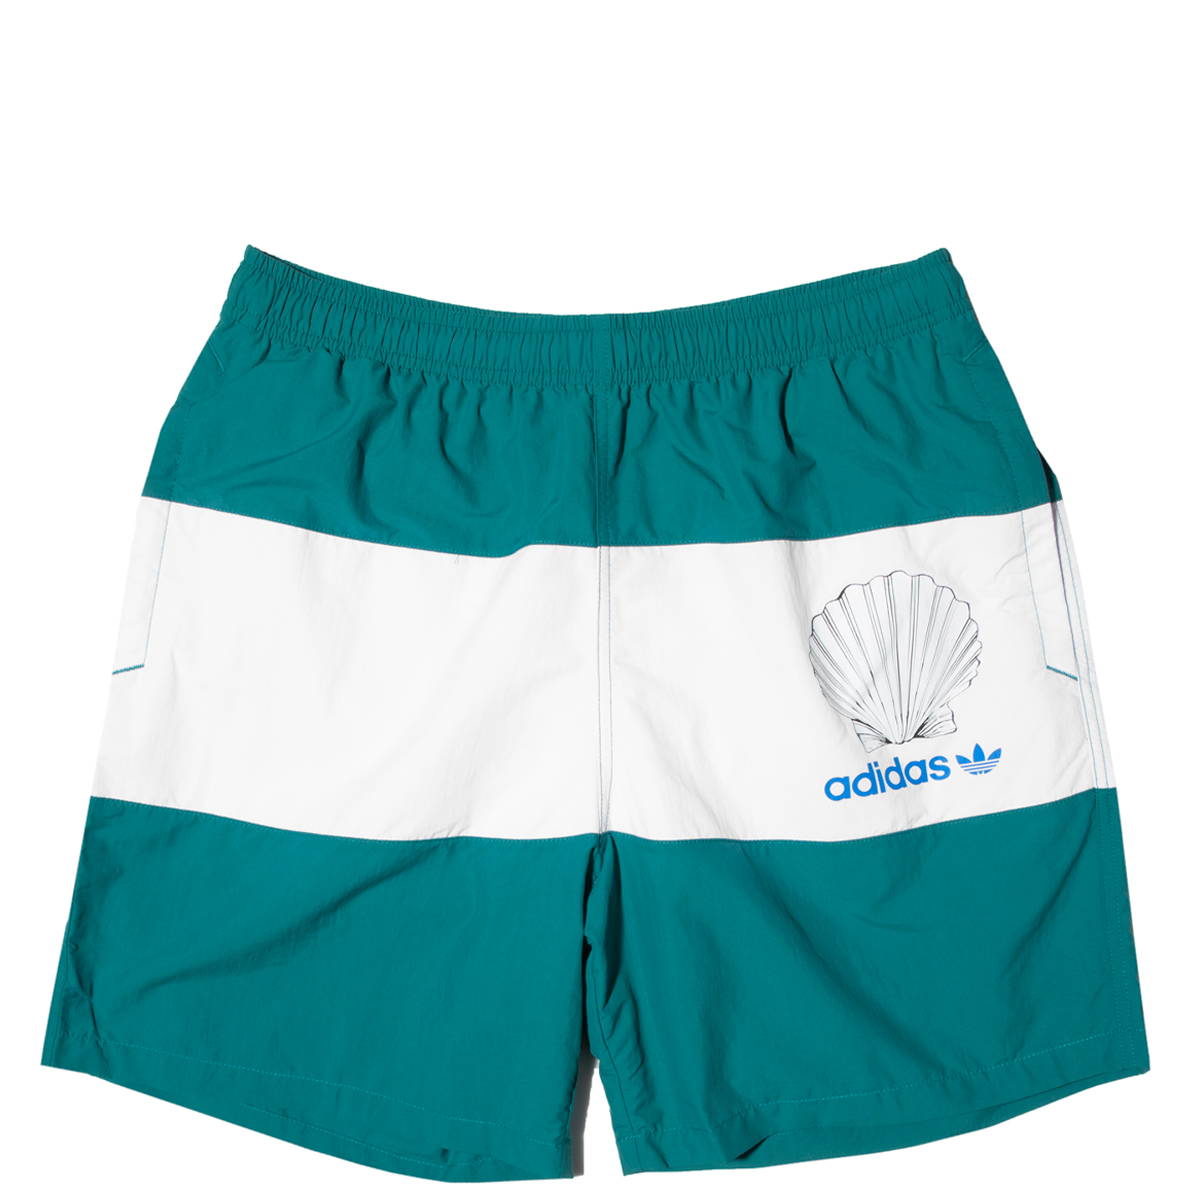 adidas sailing shorts